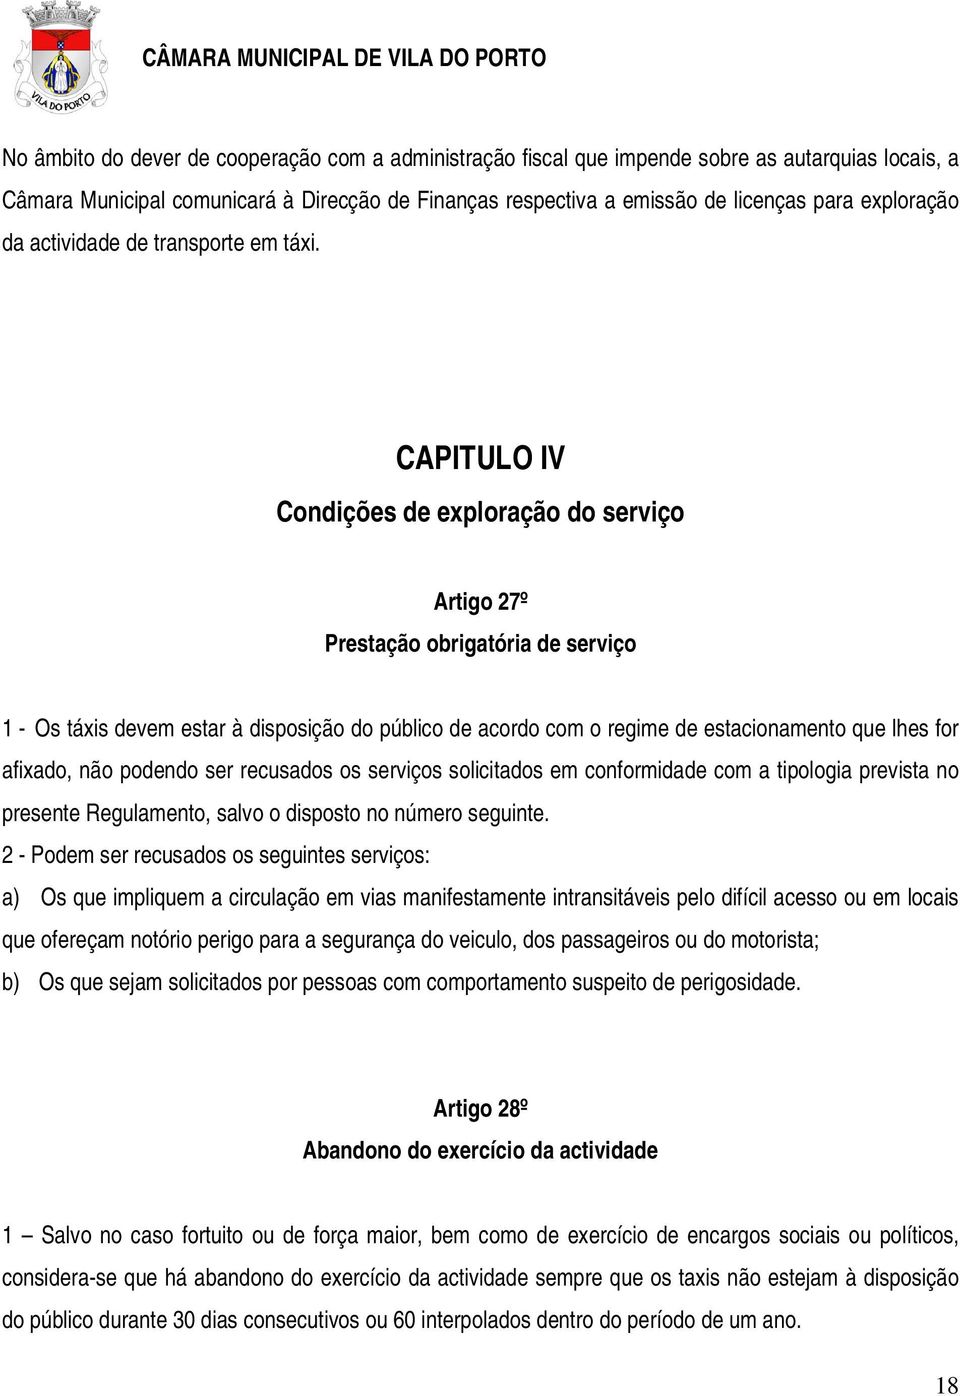 CAPITULO IV Condições de exploração do serviço Artigo 27º Prestação obrigatória de serviço 1 - Os táxis devem estar à disposição do público de acordo com o regime de estacionamento que lhes for